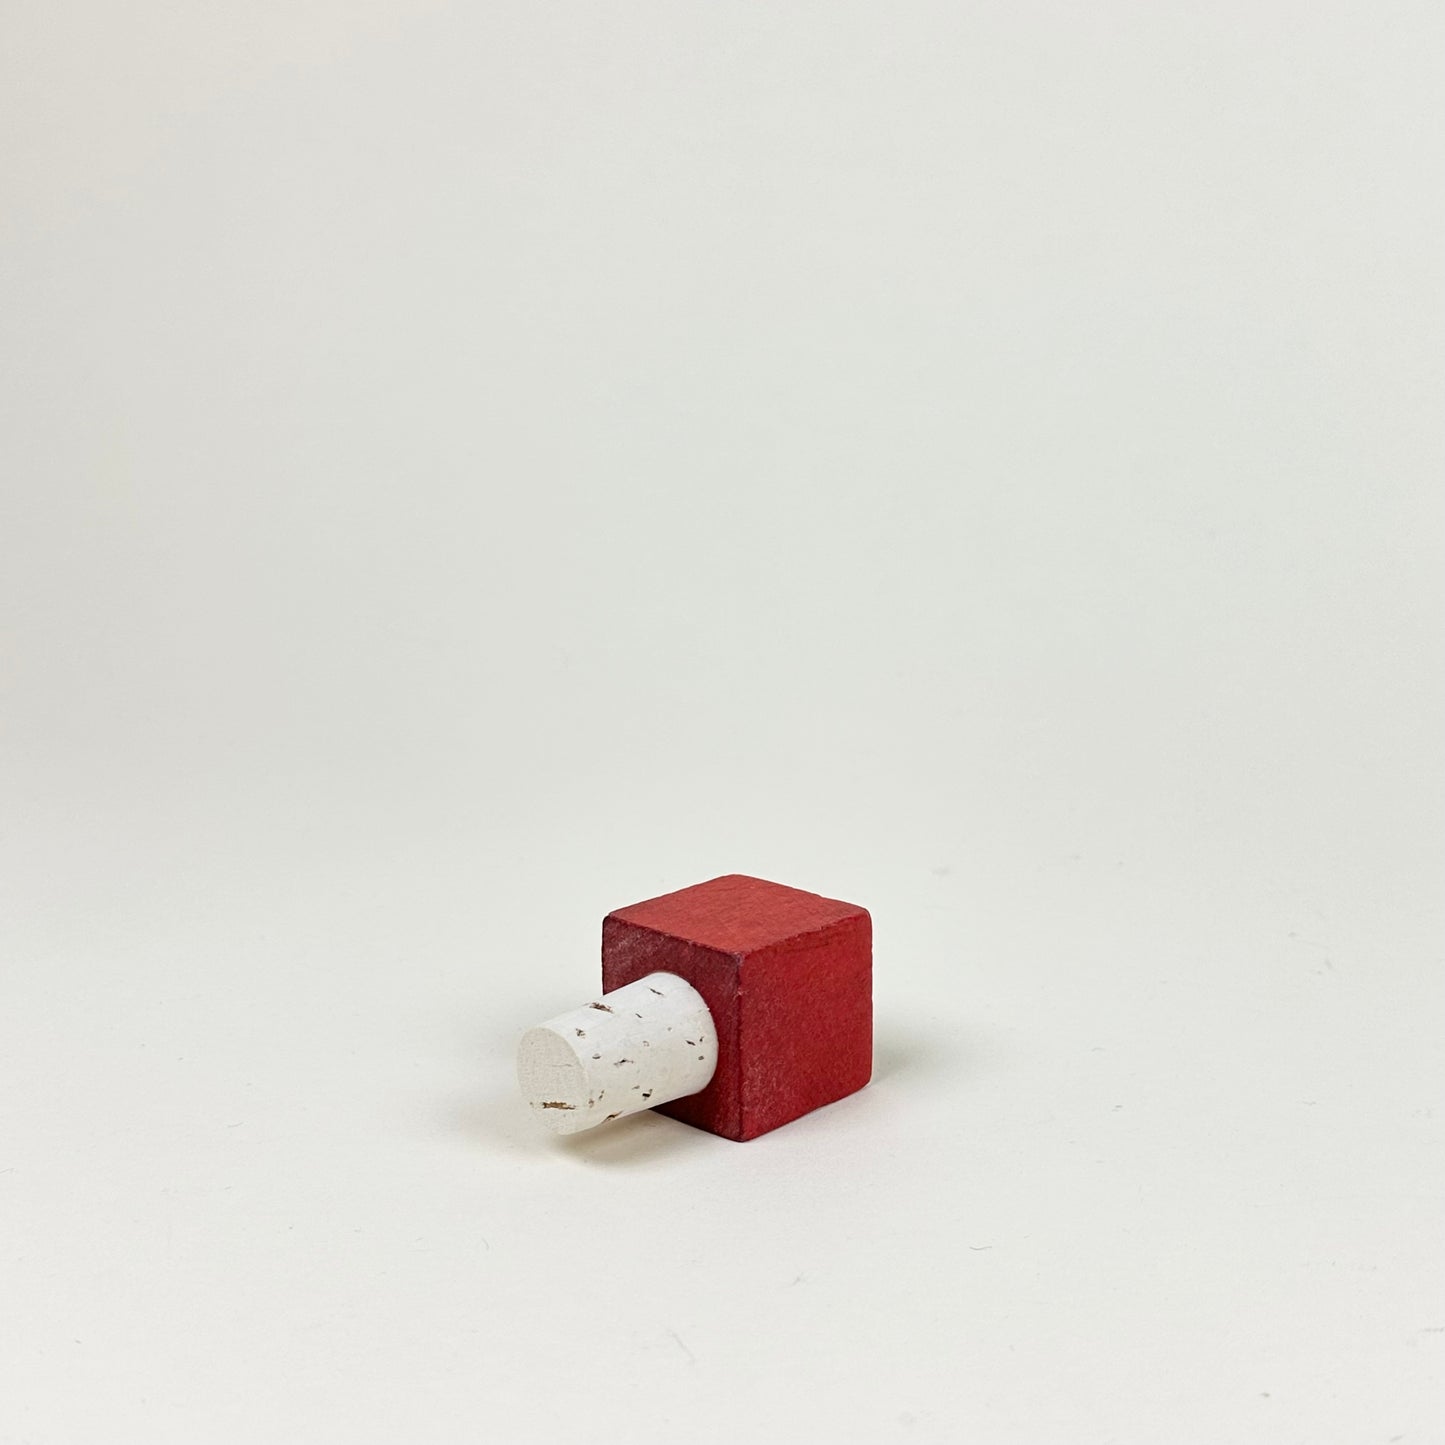 Bottle stopper, red cube, by Hugo Sundkvist